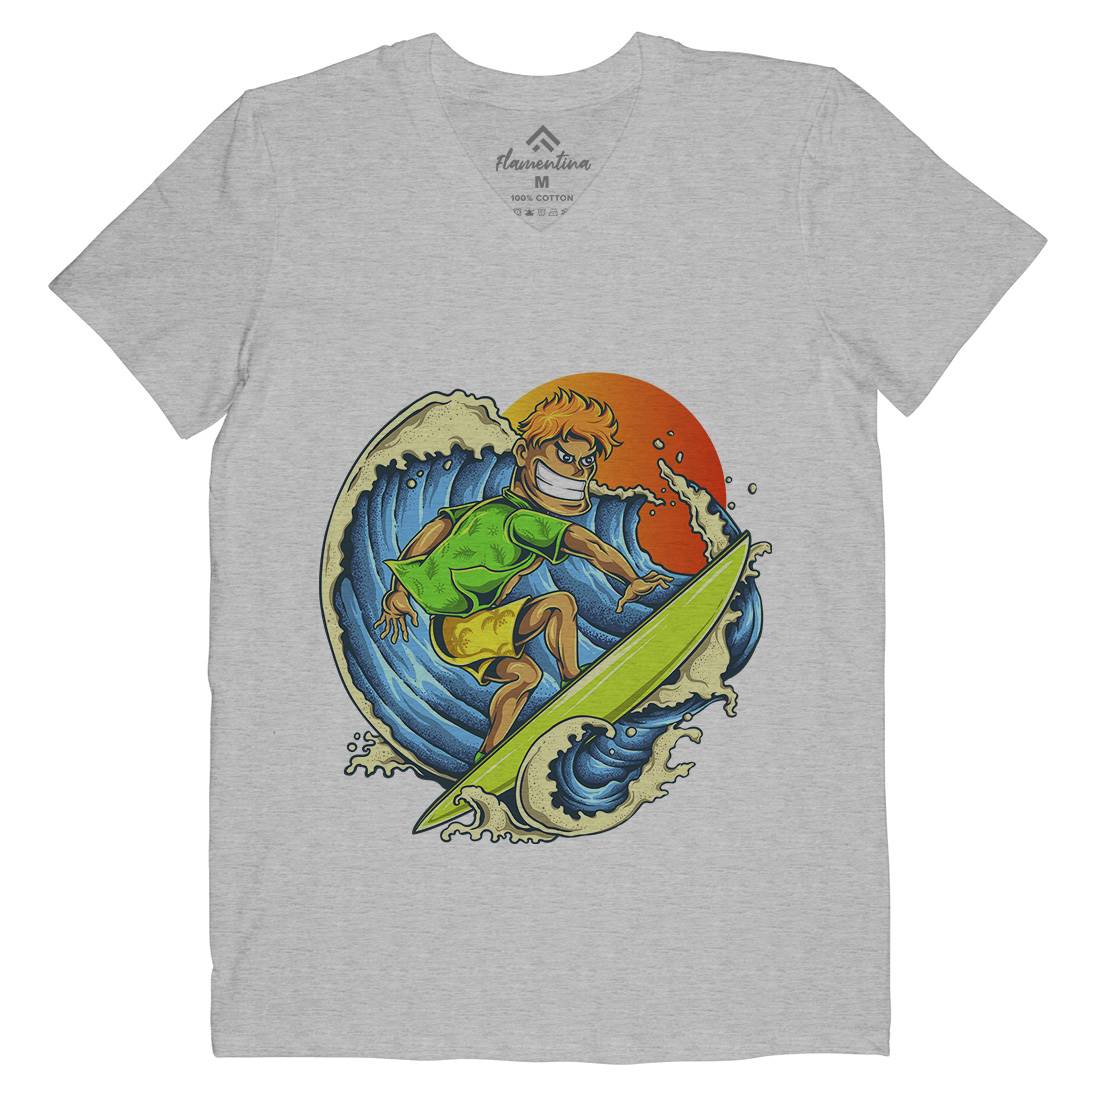 Pro Surfer Mens V-Neck T-Shirt Surf A454